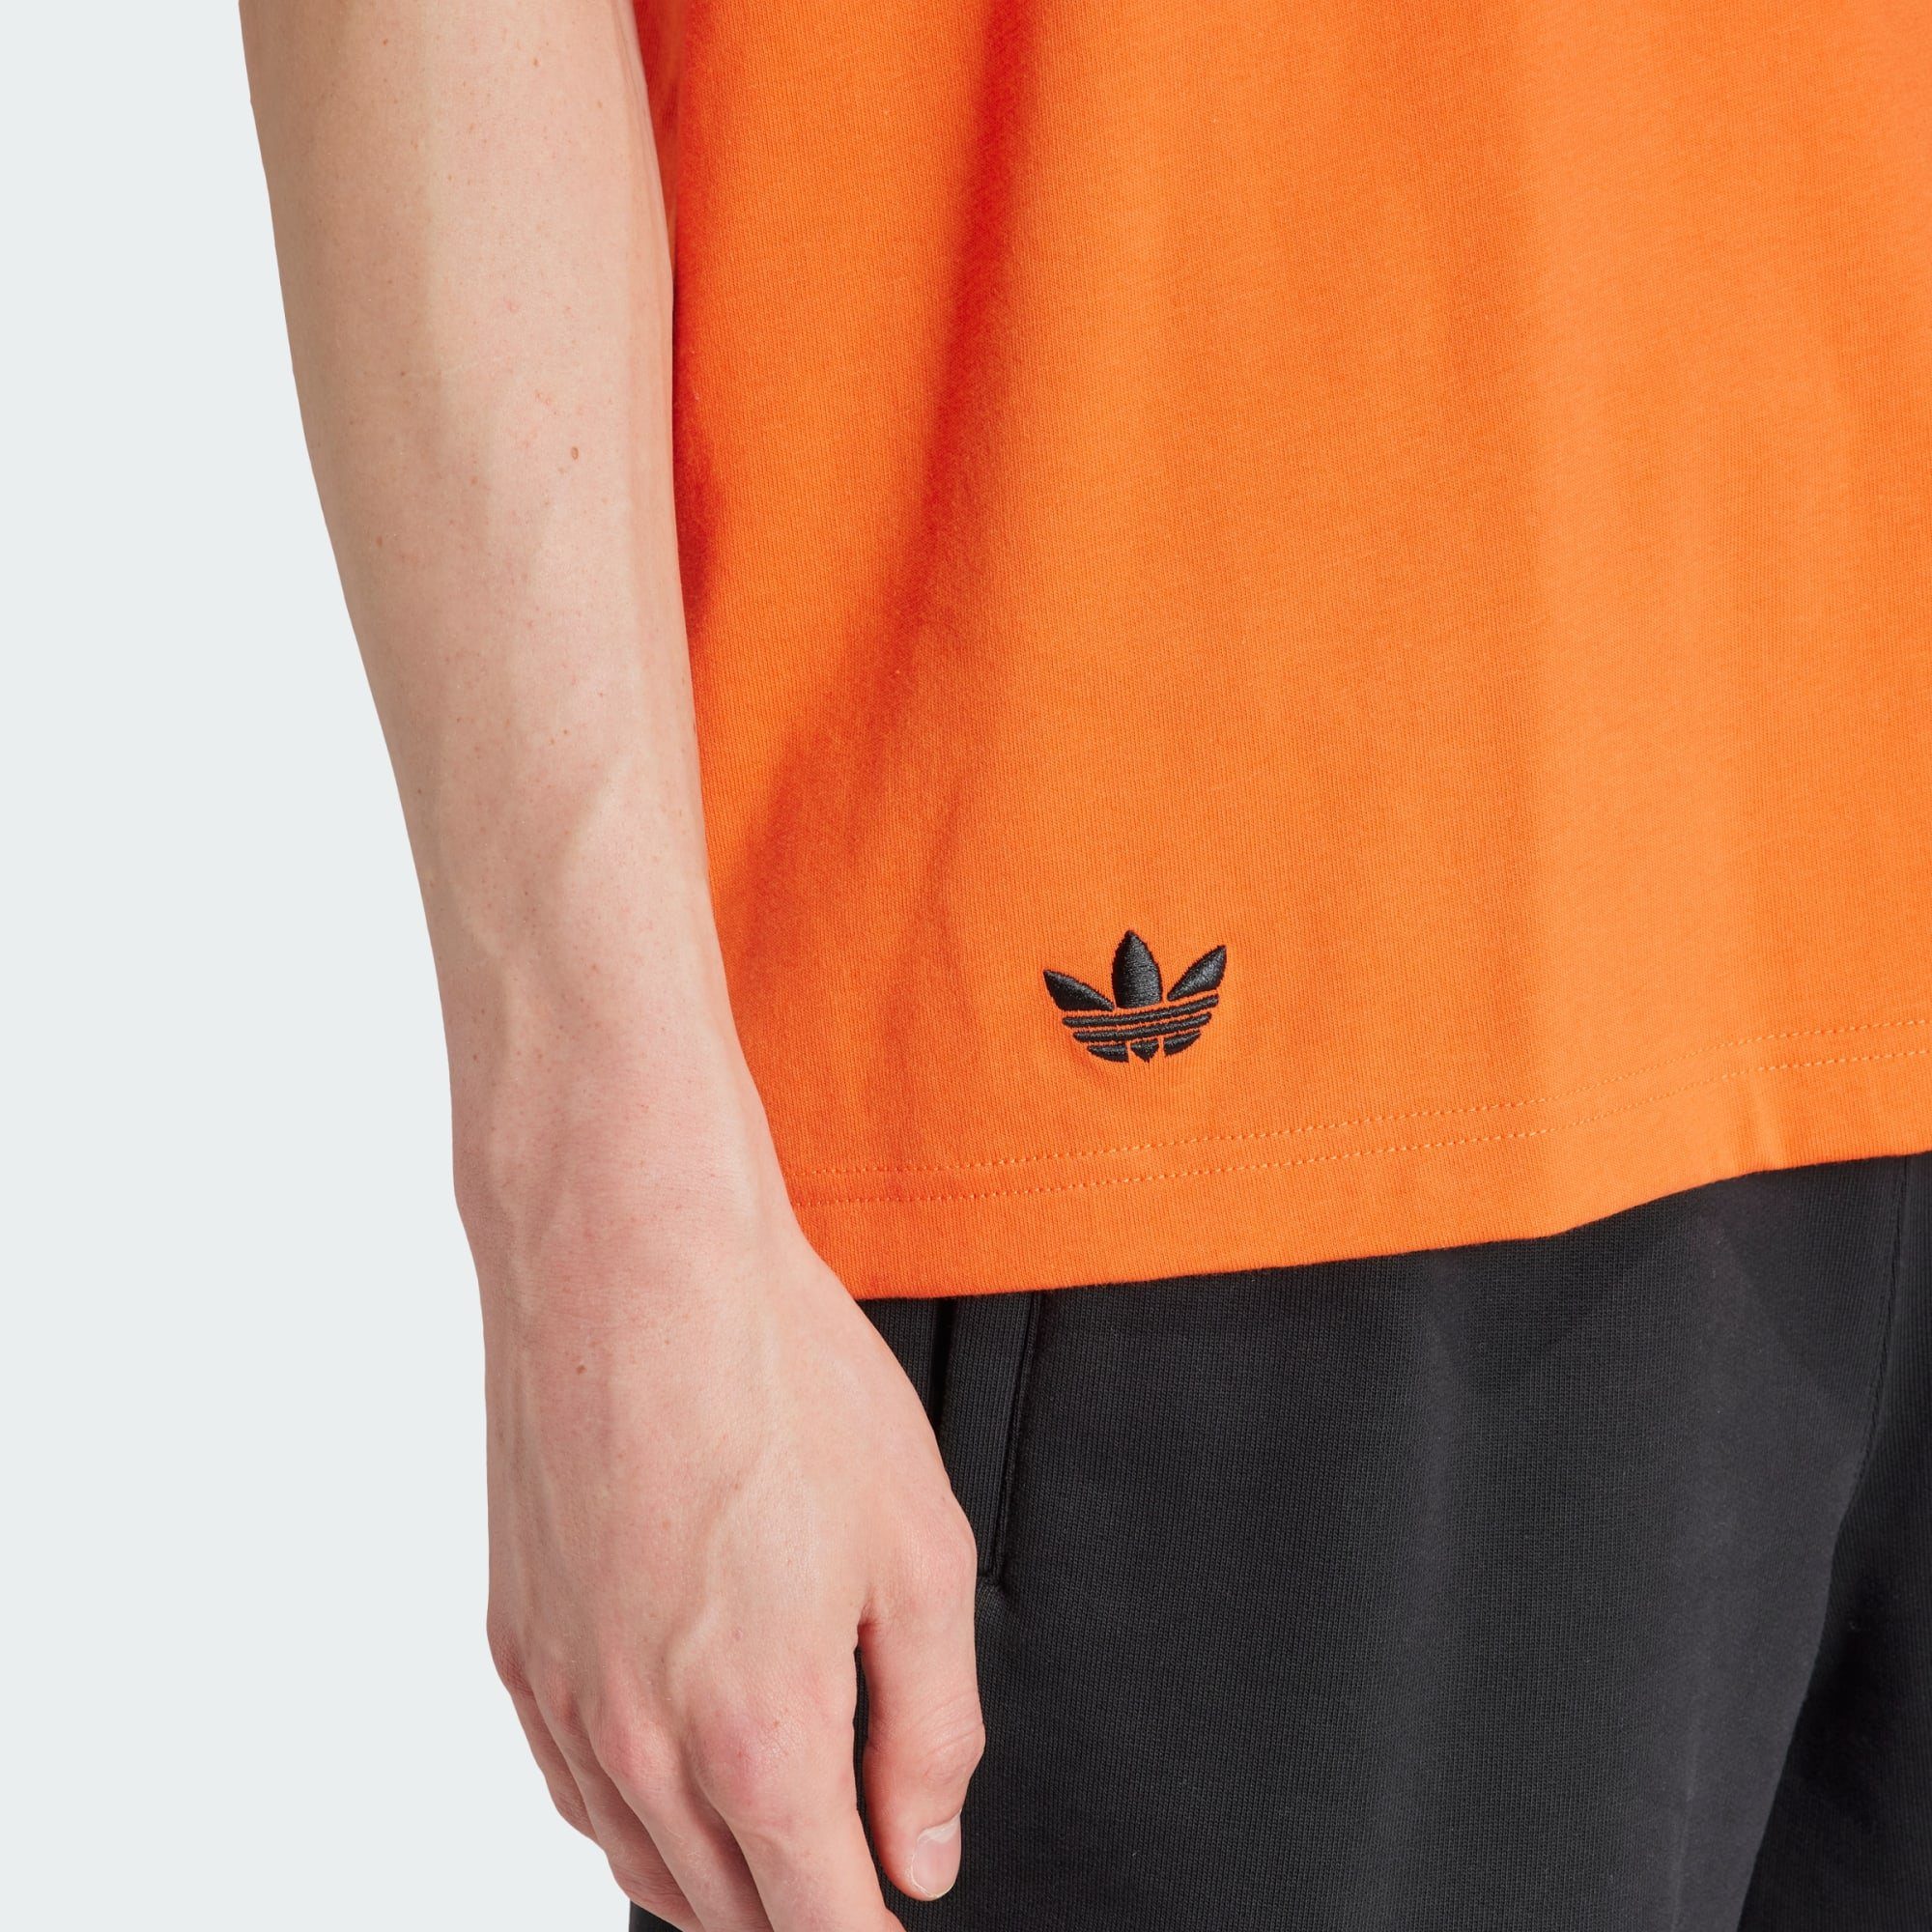 T-SHIRT NEUCLASSICS Originals Orange Impact adidas Semi ADICOLOR T-Shirt